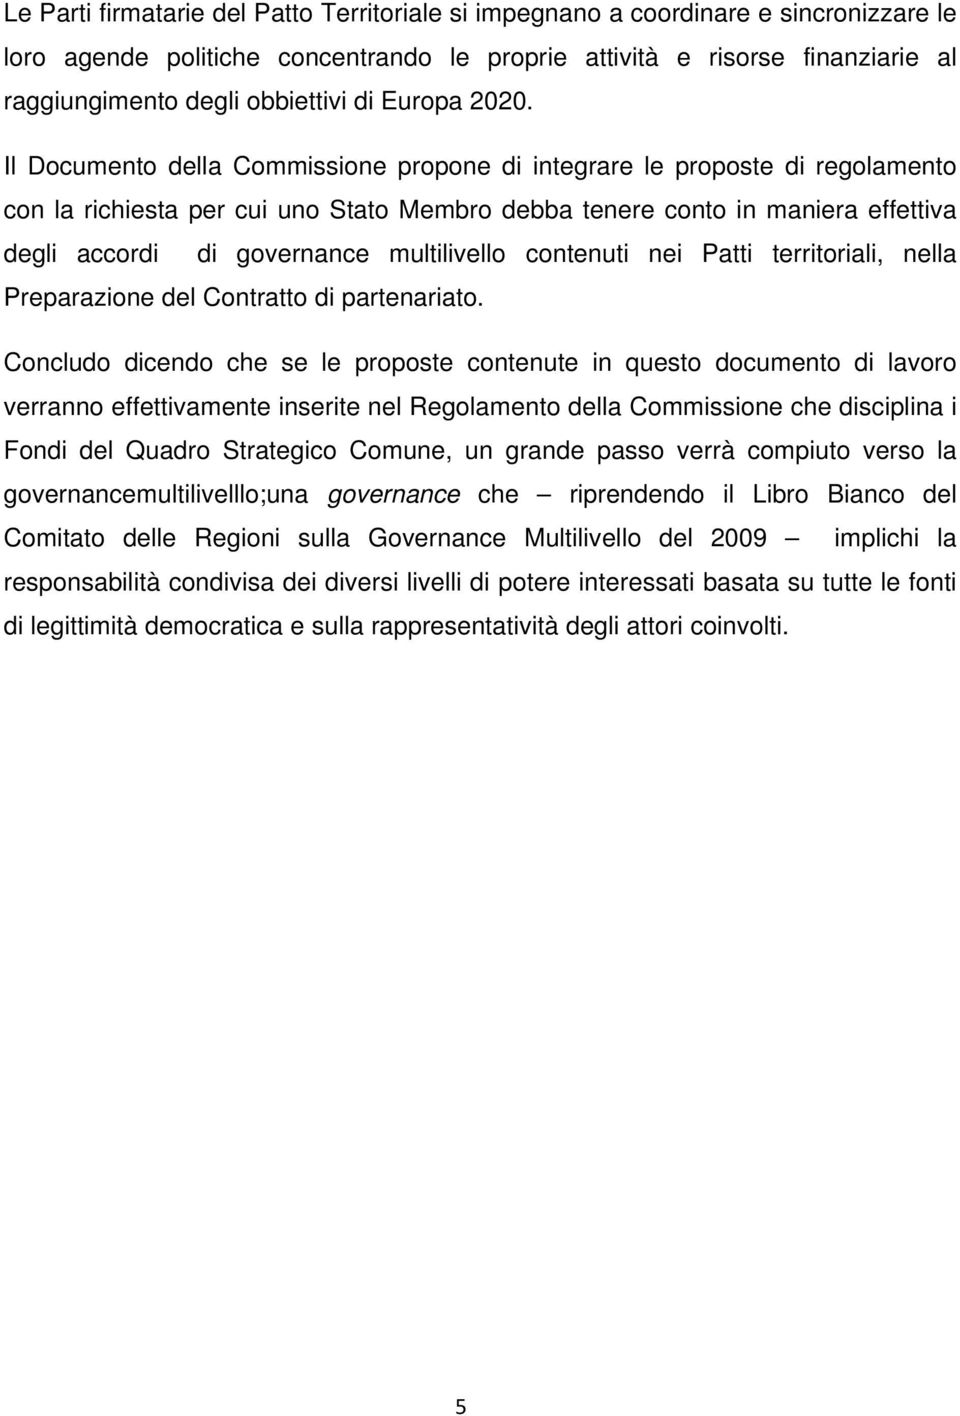 Il Documento della Commissione propone di integrare le proposte di regolamento con la richiesta per cui uno Stato Membro debba tenere conto in maniera effettiva degli accordi di governance